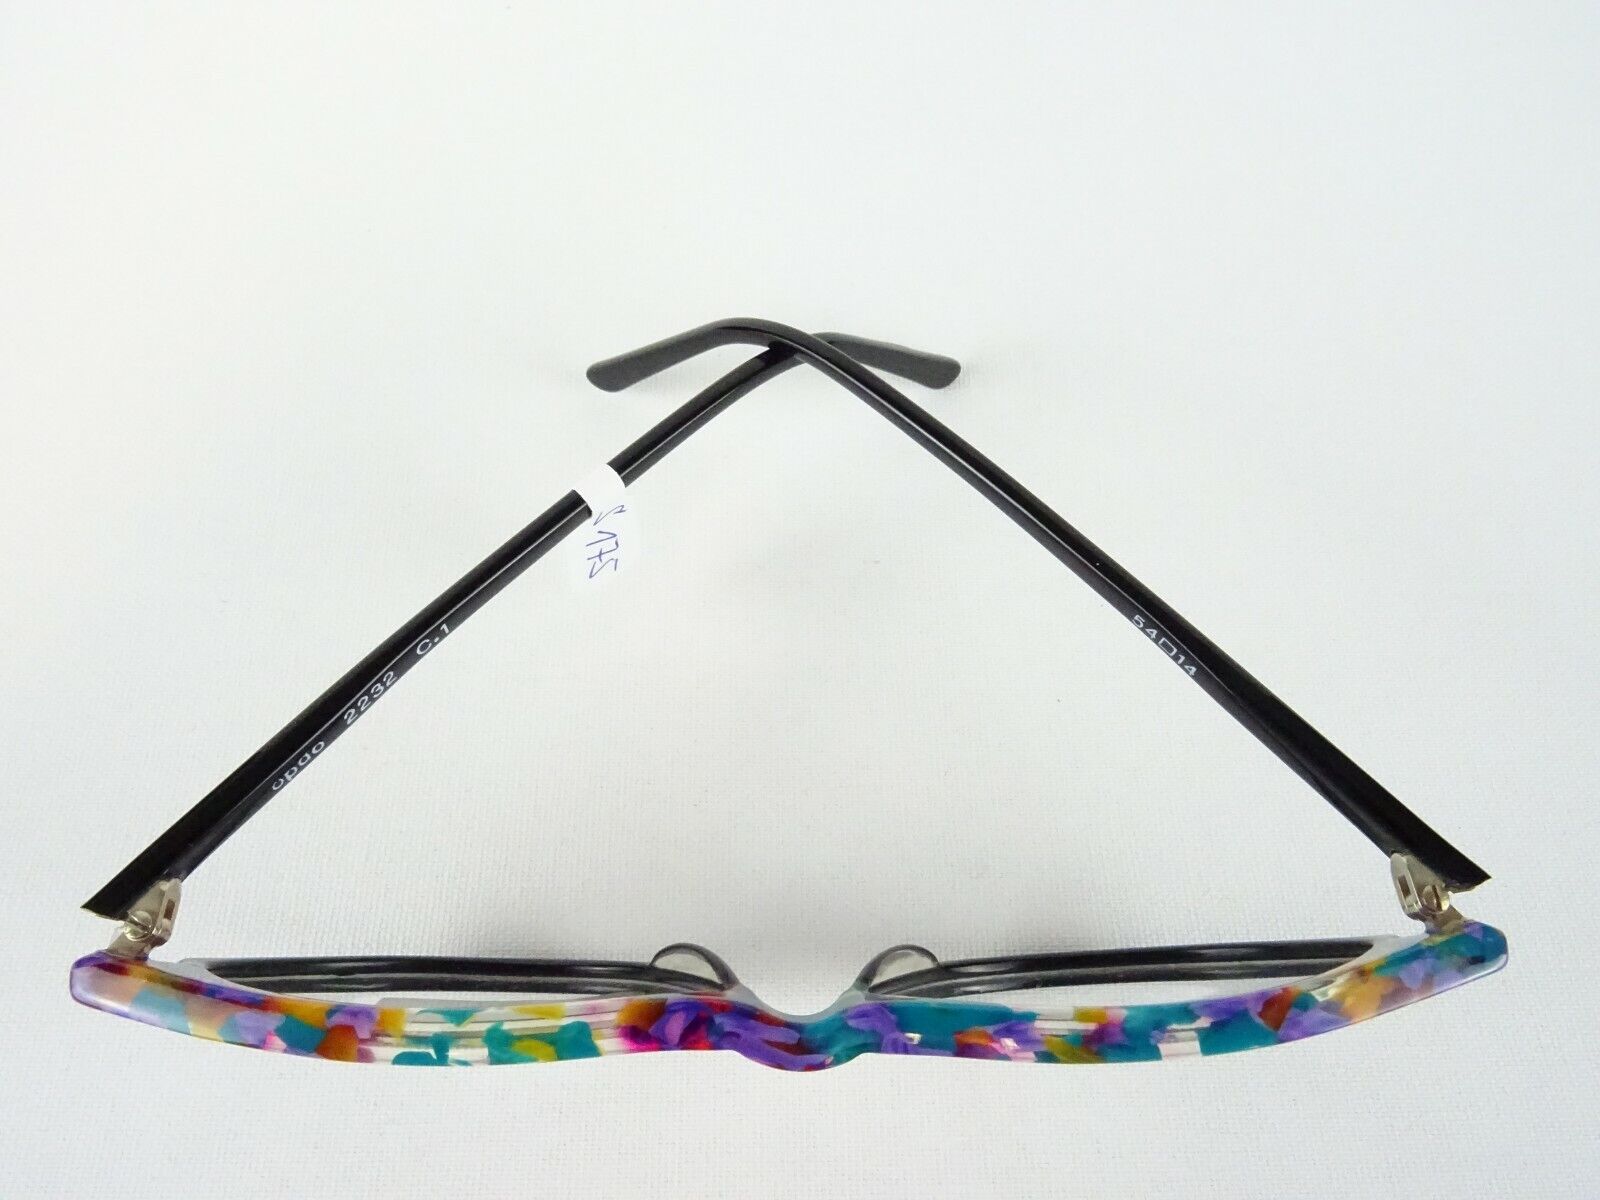 Cateye Brille Damenfassung ausgefallen in tollen Farben Kunststoffgestelle Gr. M